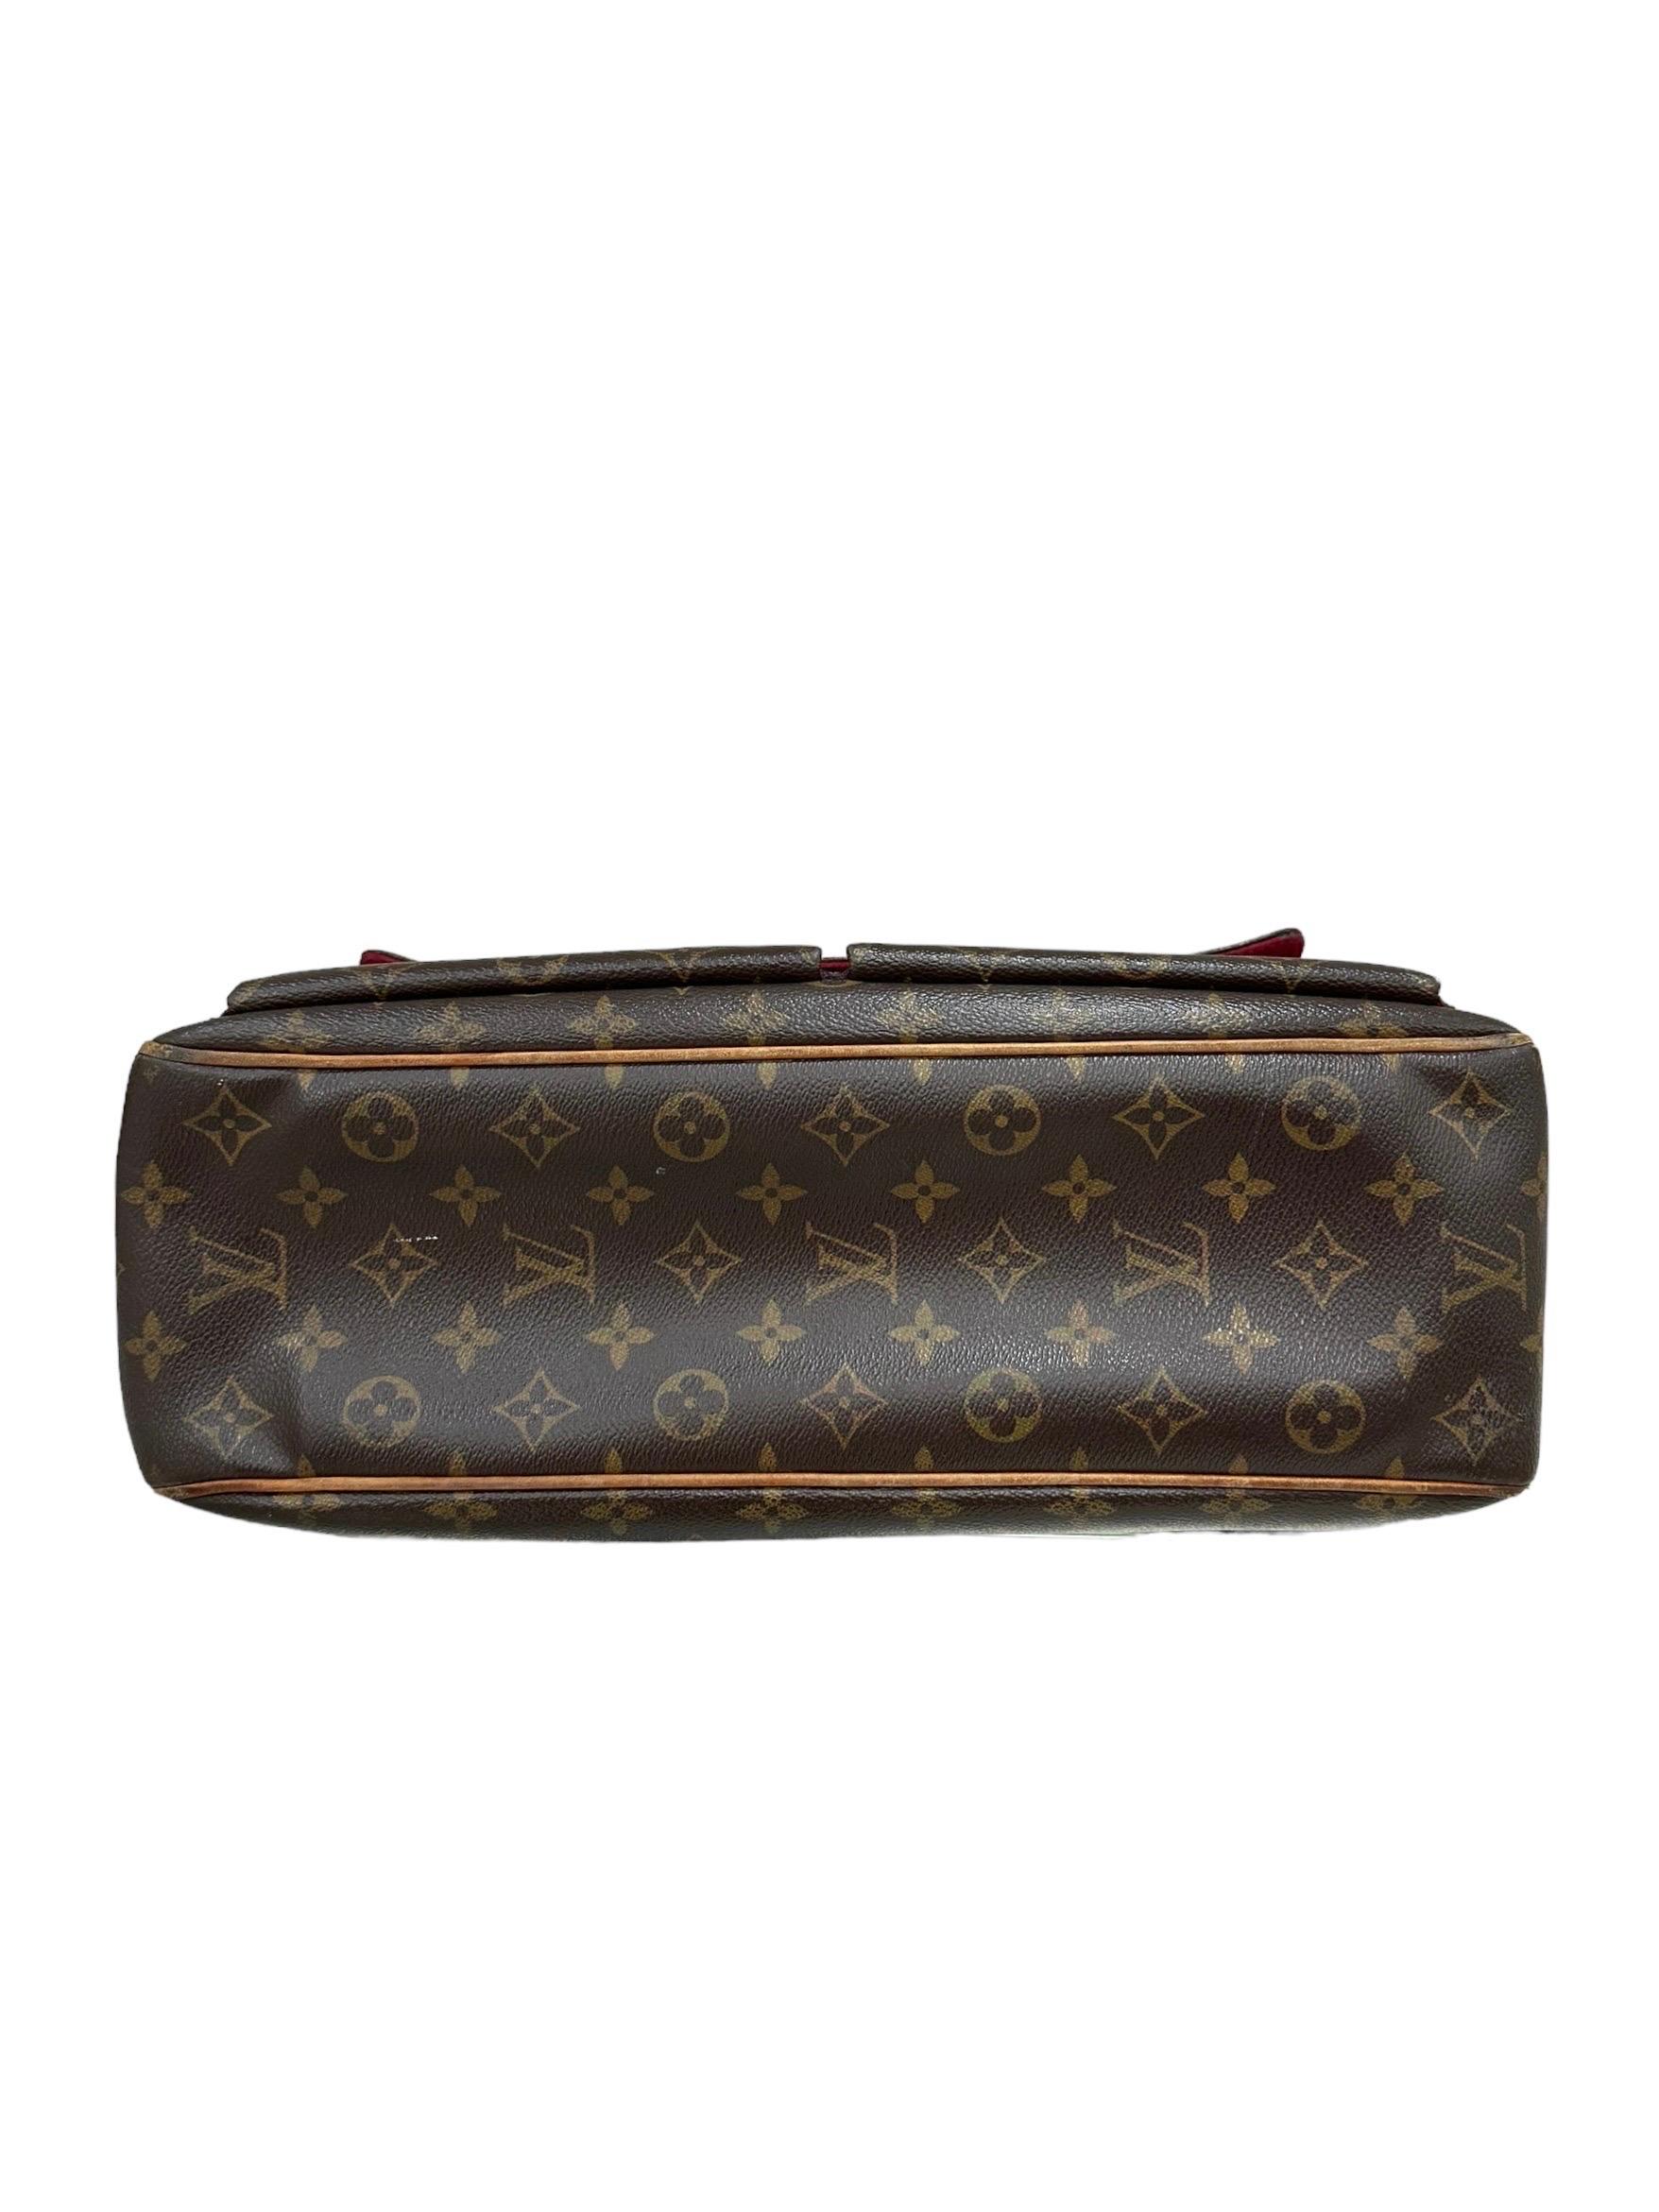 Louis Vuitton Multiples Cite GM Monogram Shoulder Bag 3